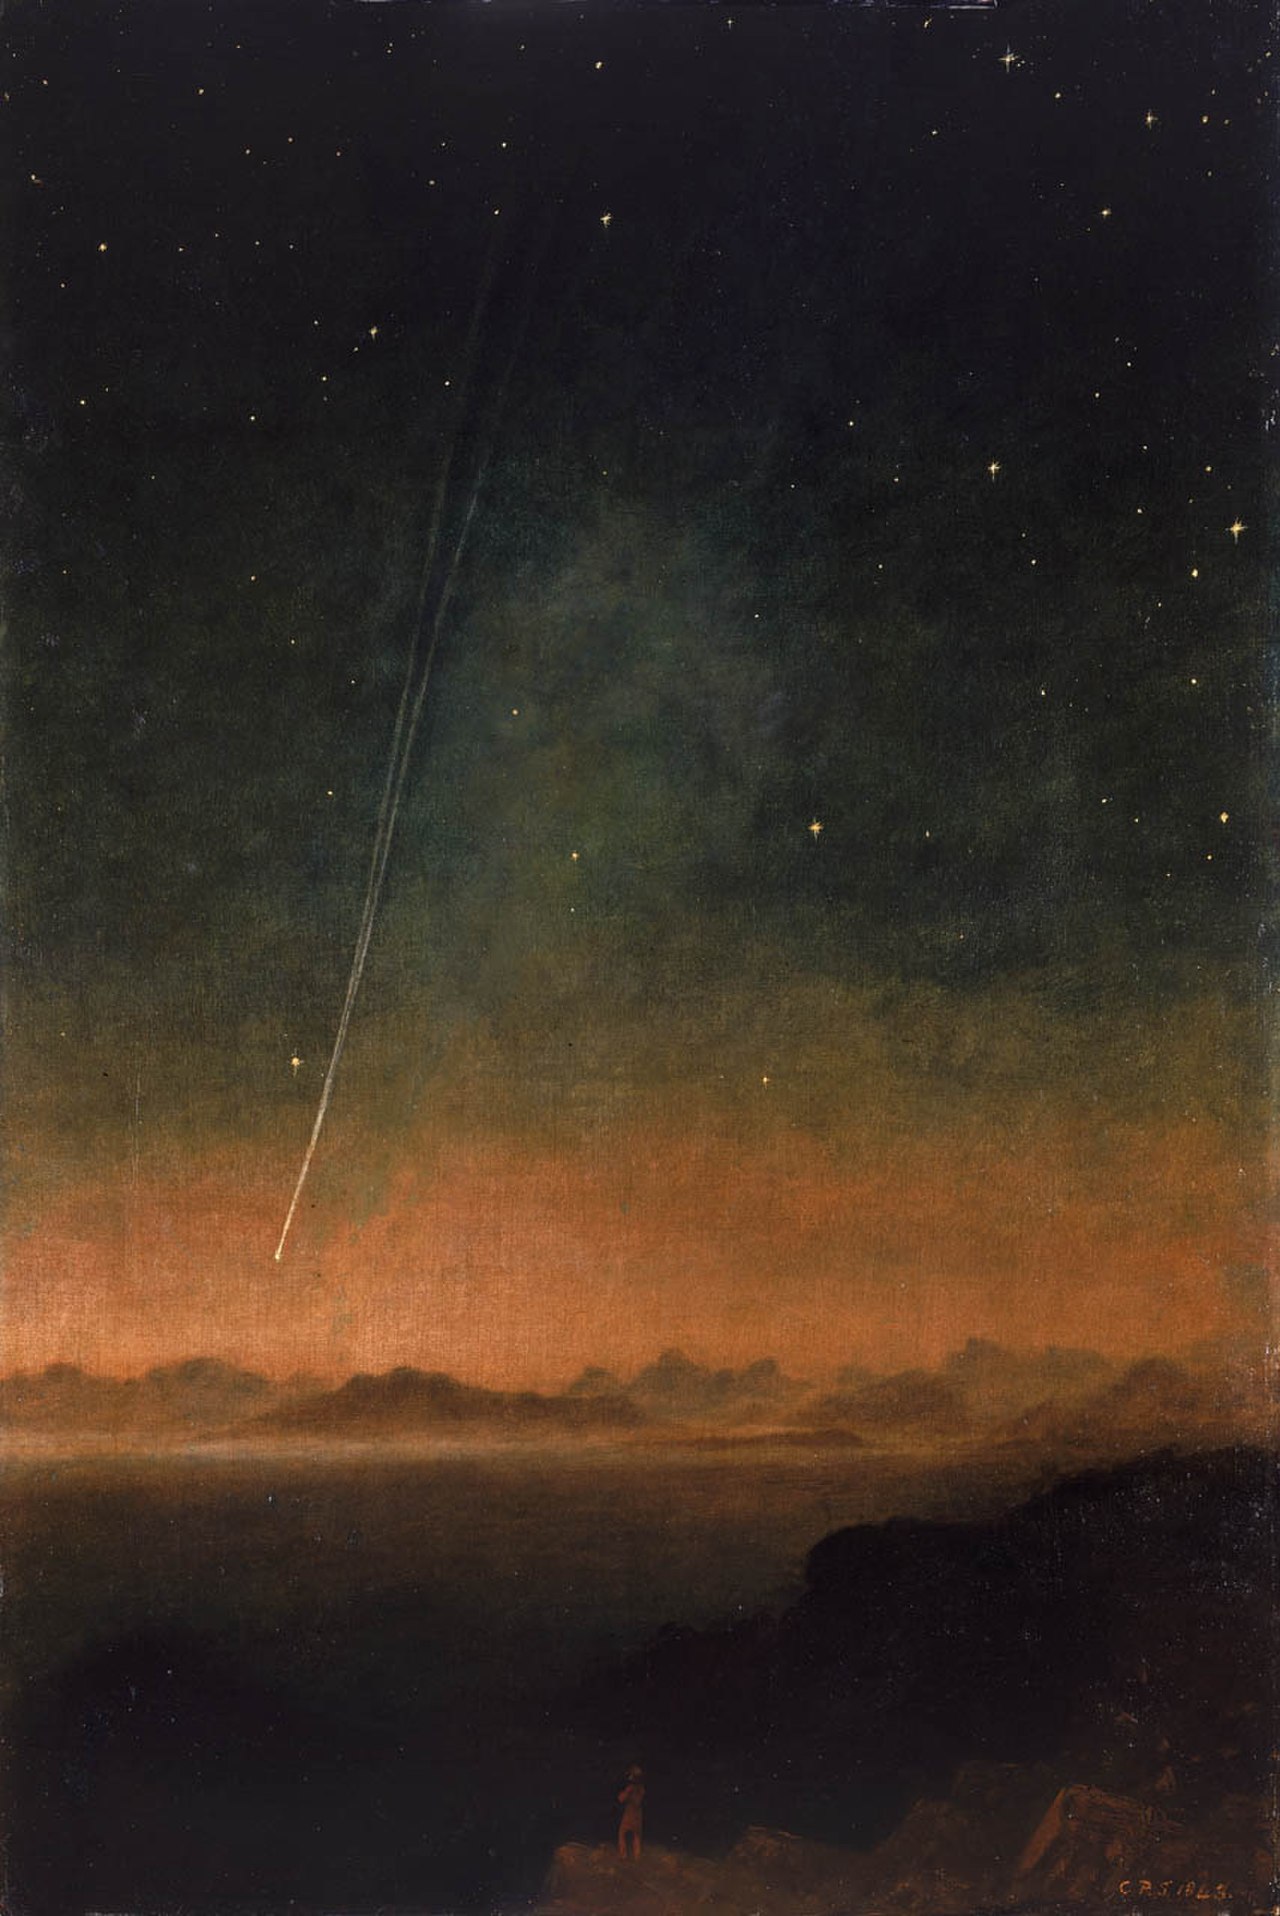 Az 1843. évi nagy üstökös by Charles Piazzi Smyth - 1843 - 105,2 x 75,3 cm 